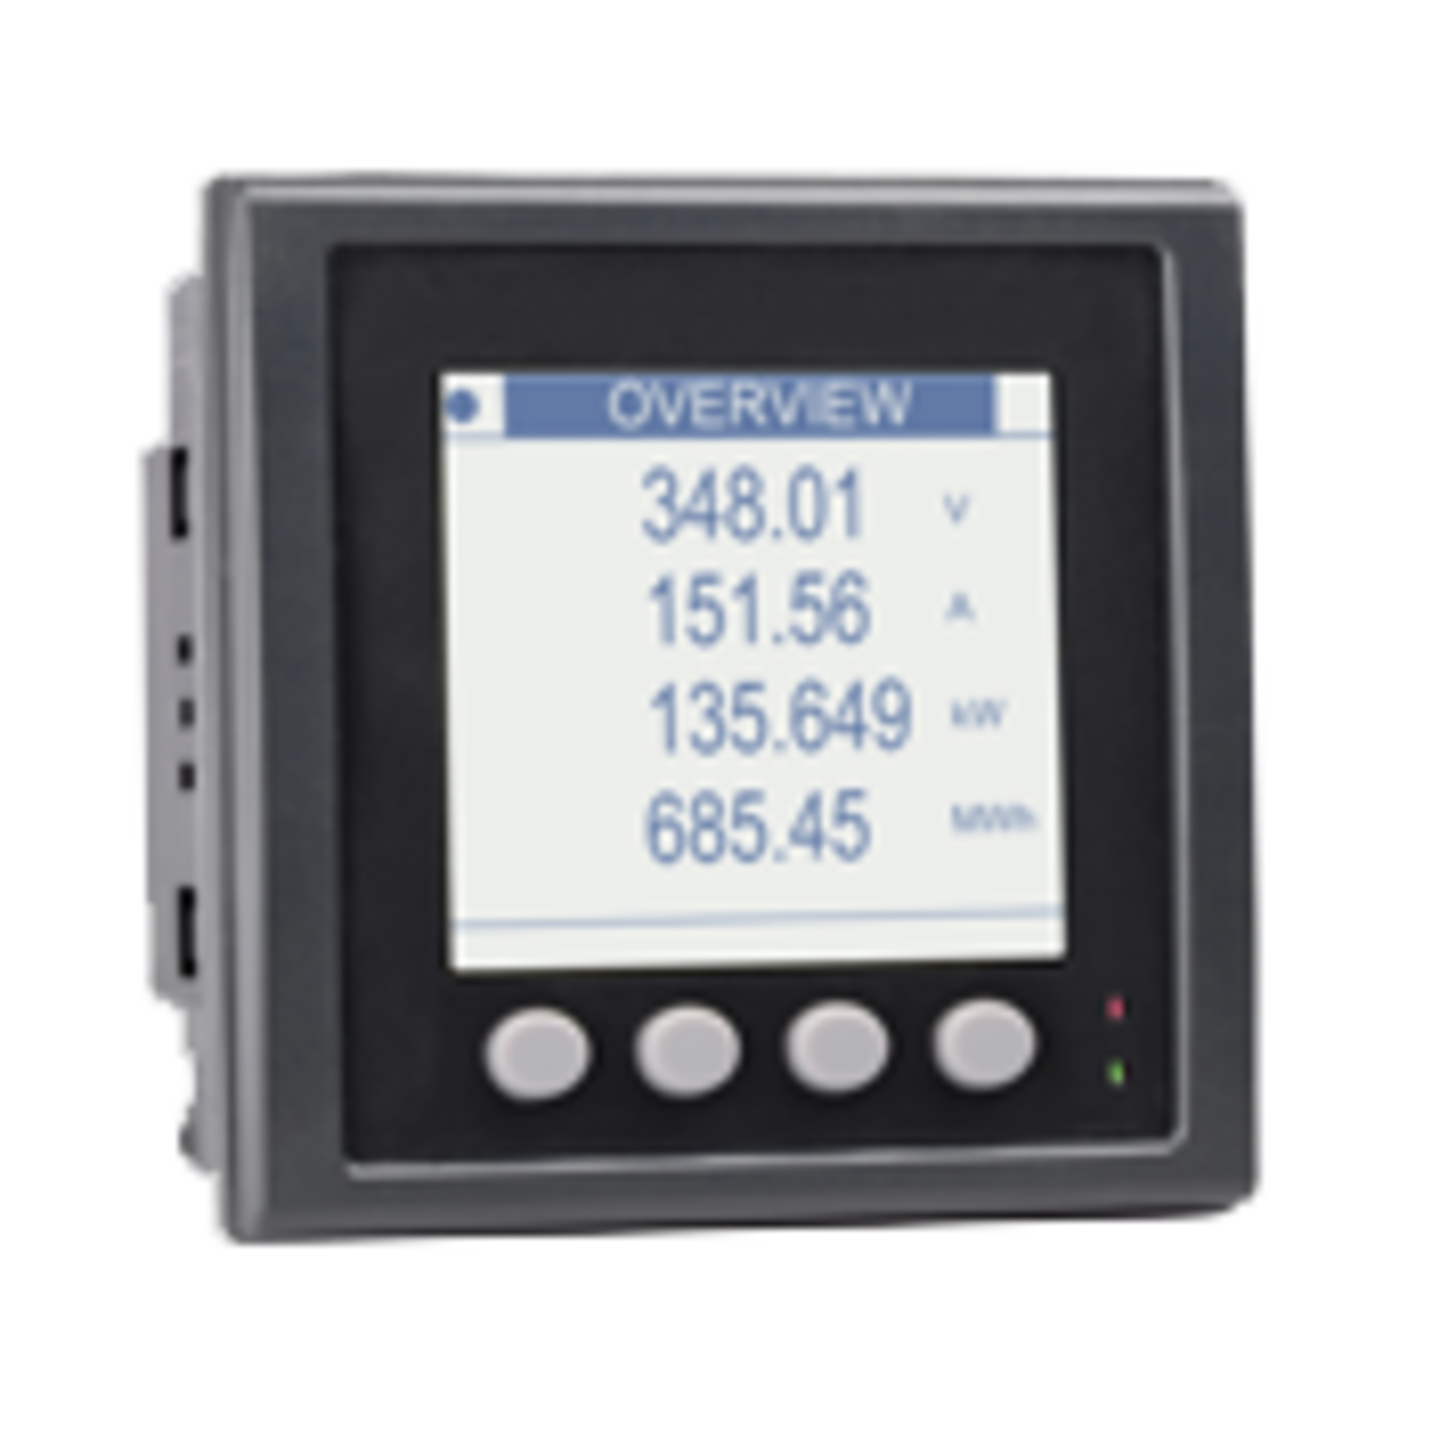 CS PM 5110 - Medidor de corriente/potencia efectiva